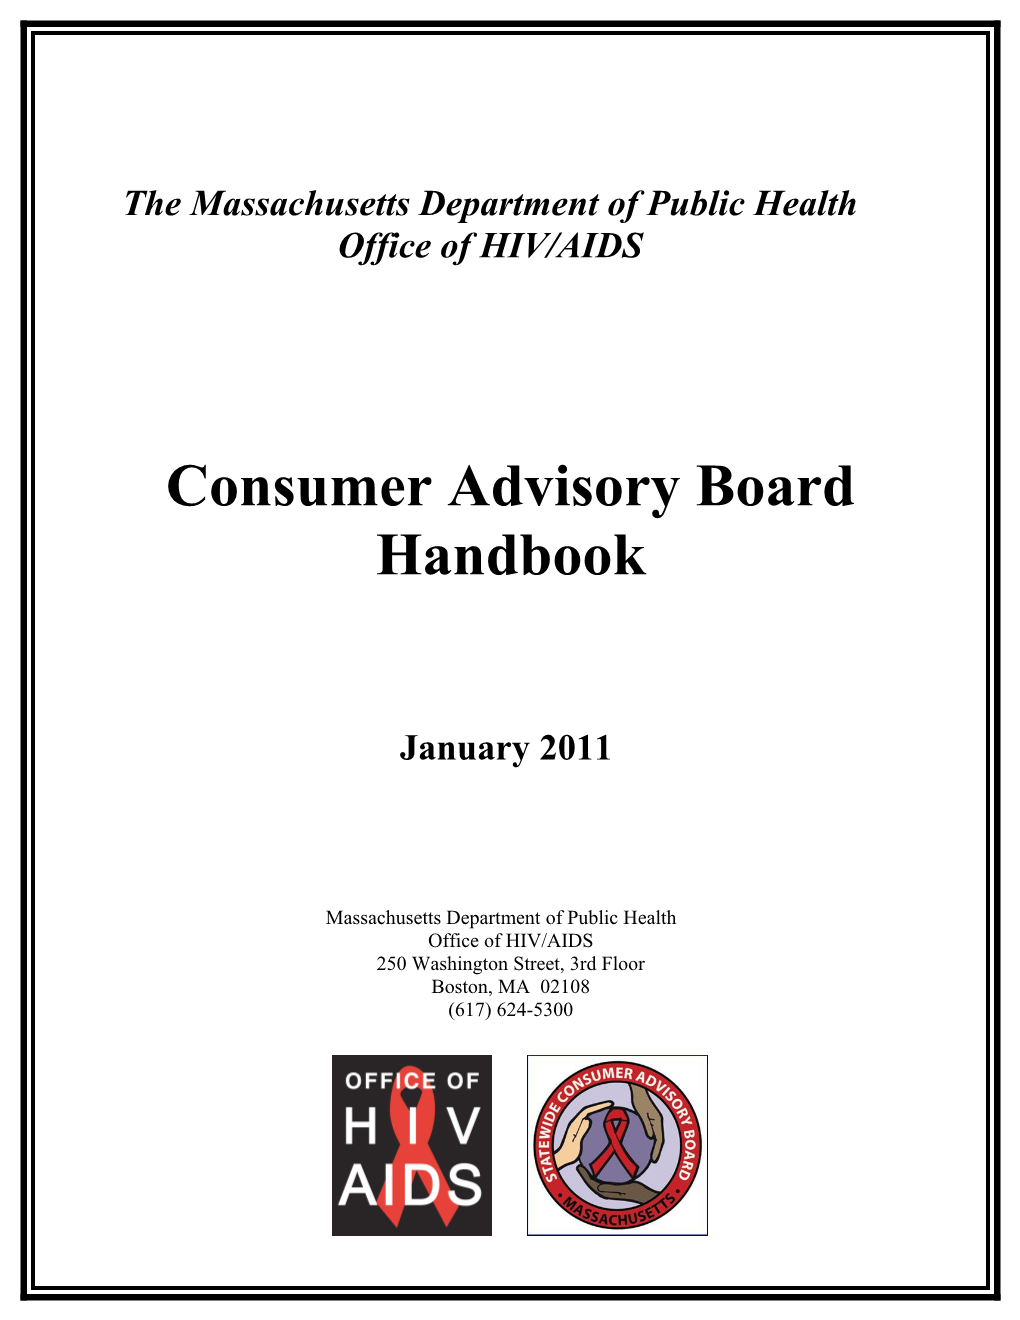 Consumer Advisory Board System Handbook